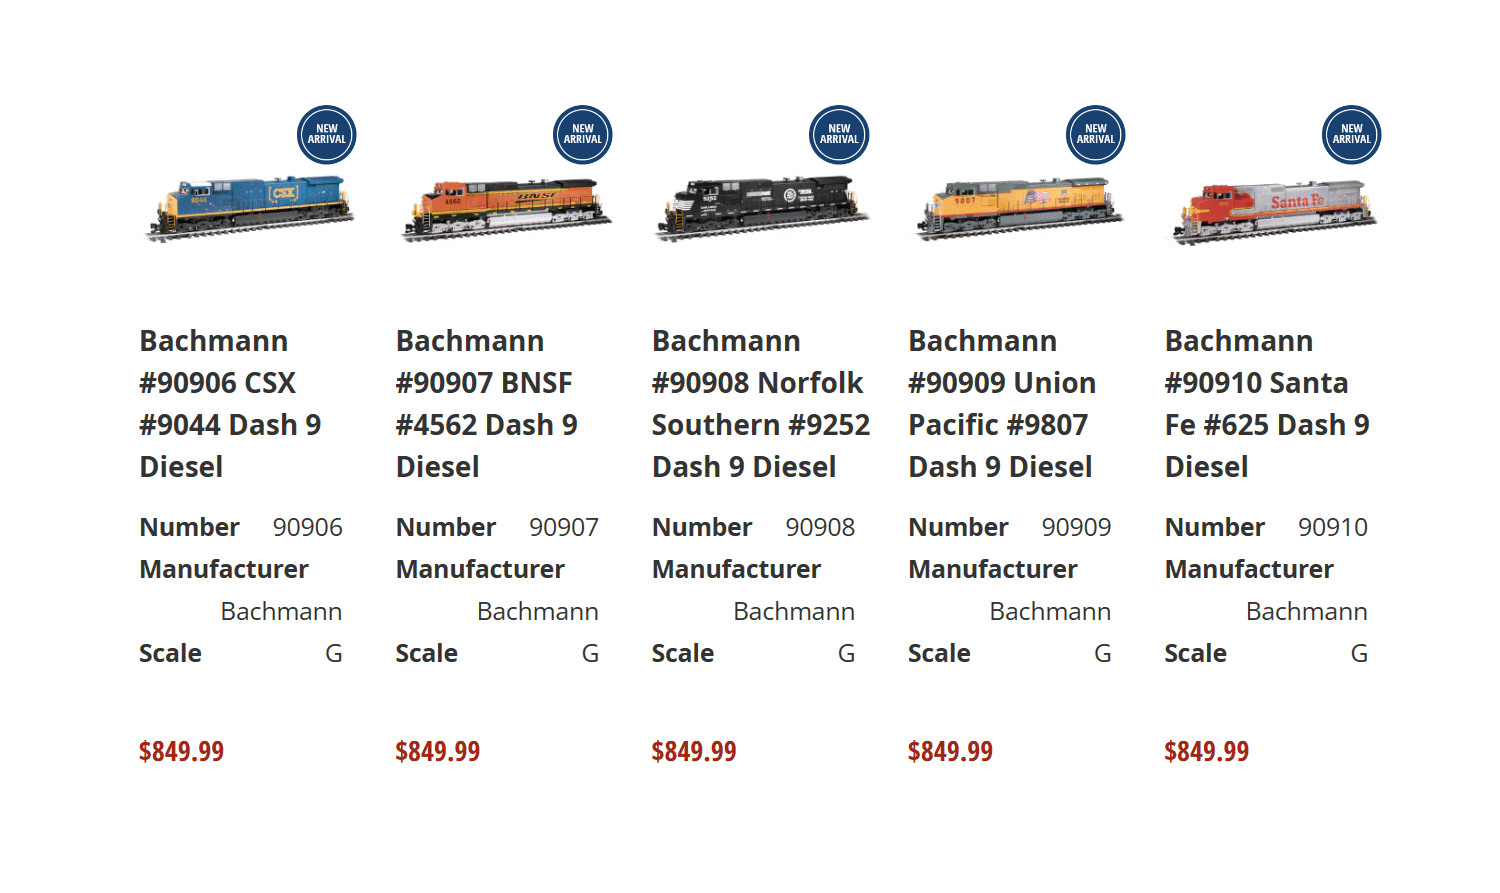 Alle neuen Artikel der Dash 9 Modelle von Bachmann finden Sie bei Trainworld® wenn Sie auf das obige Bild klicken. Hier sind nun die weiteren Modelle mit einer zweiten Nummer abgebildet. 